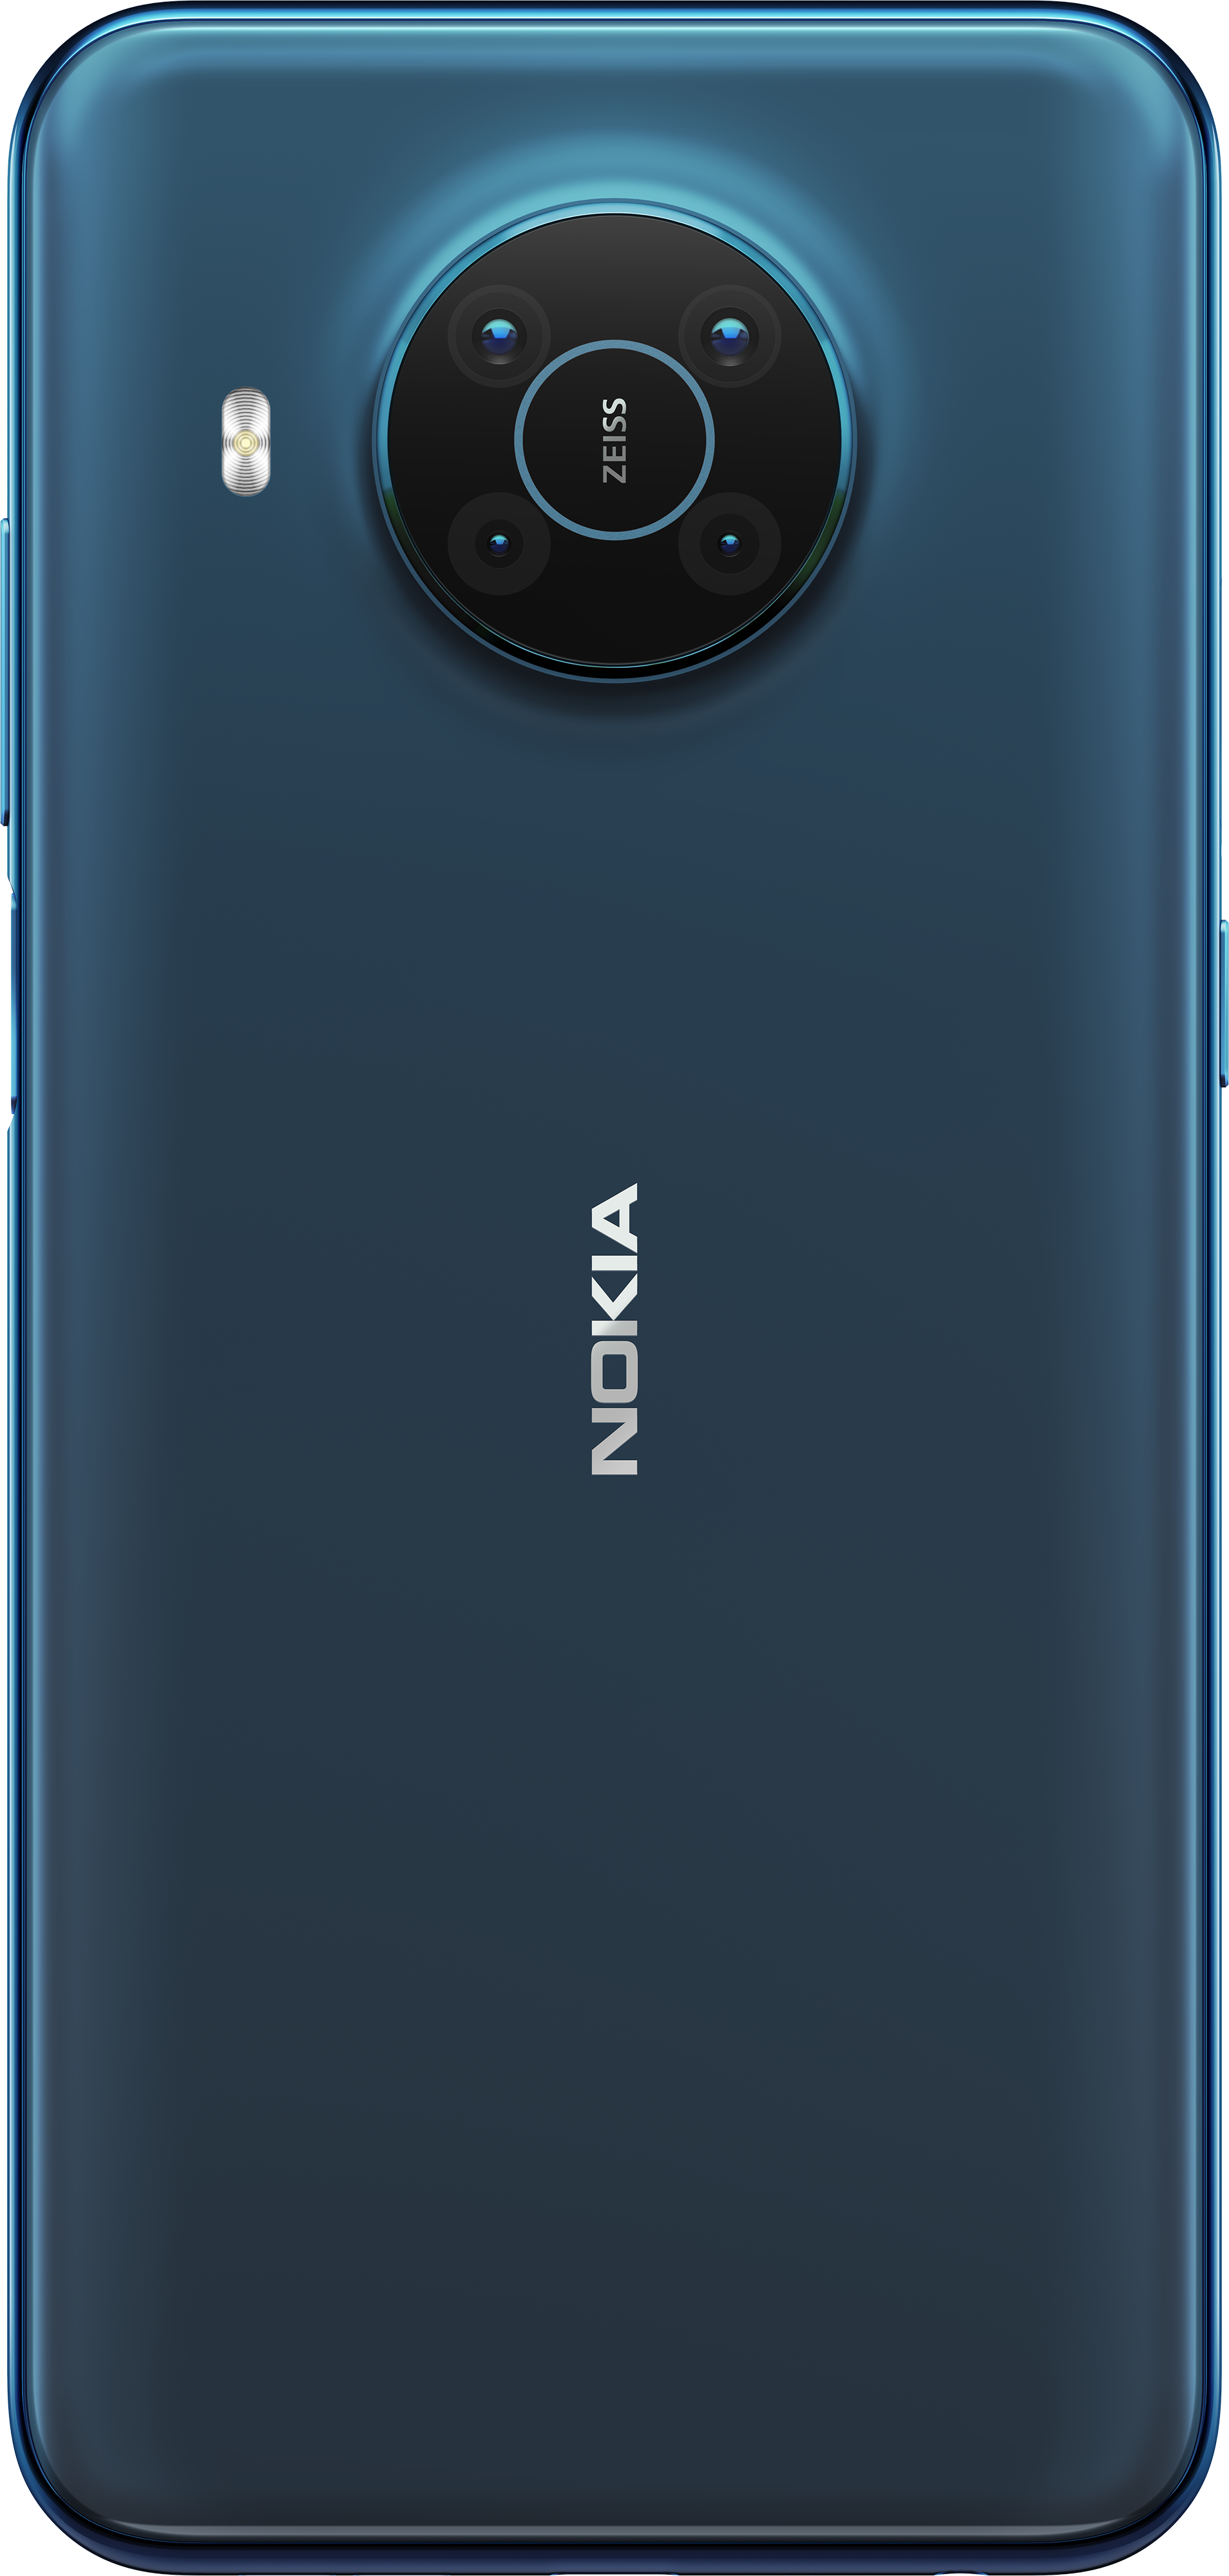 2021 nokia android Nokia T20